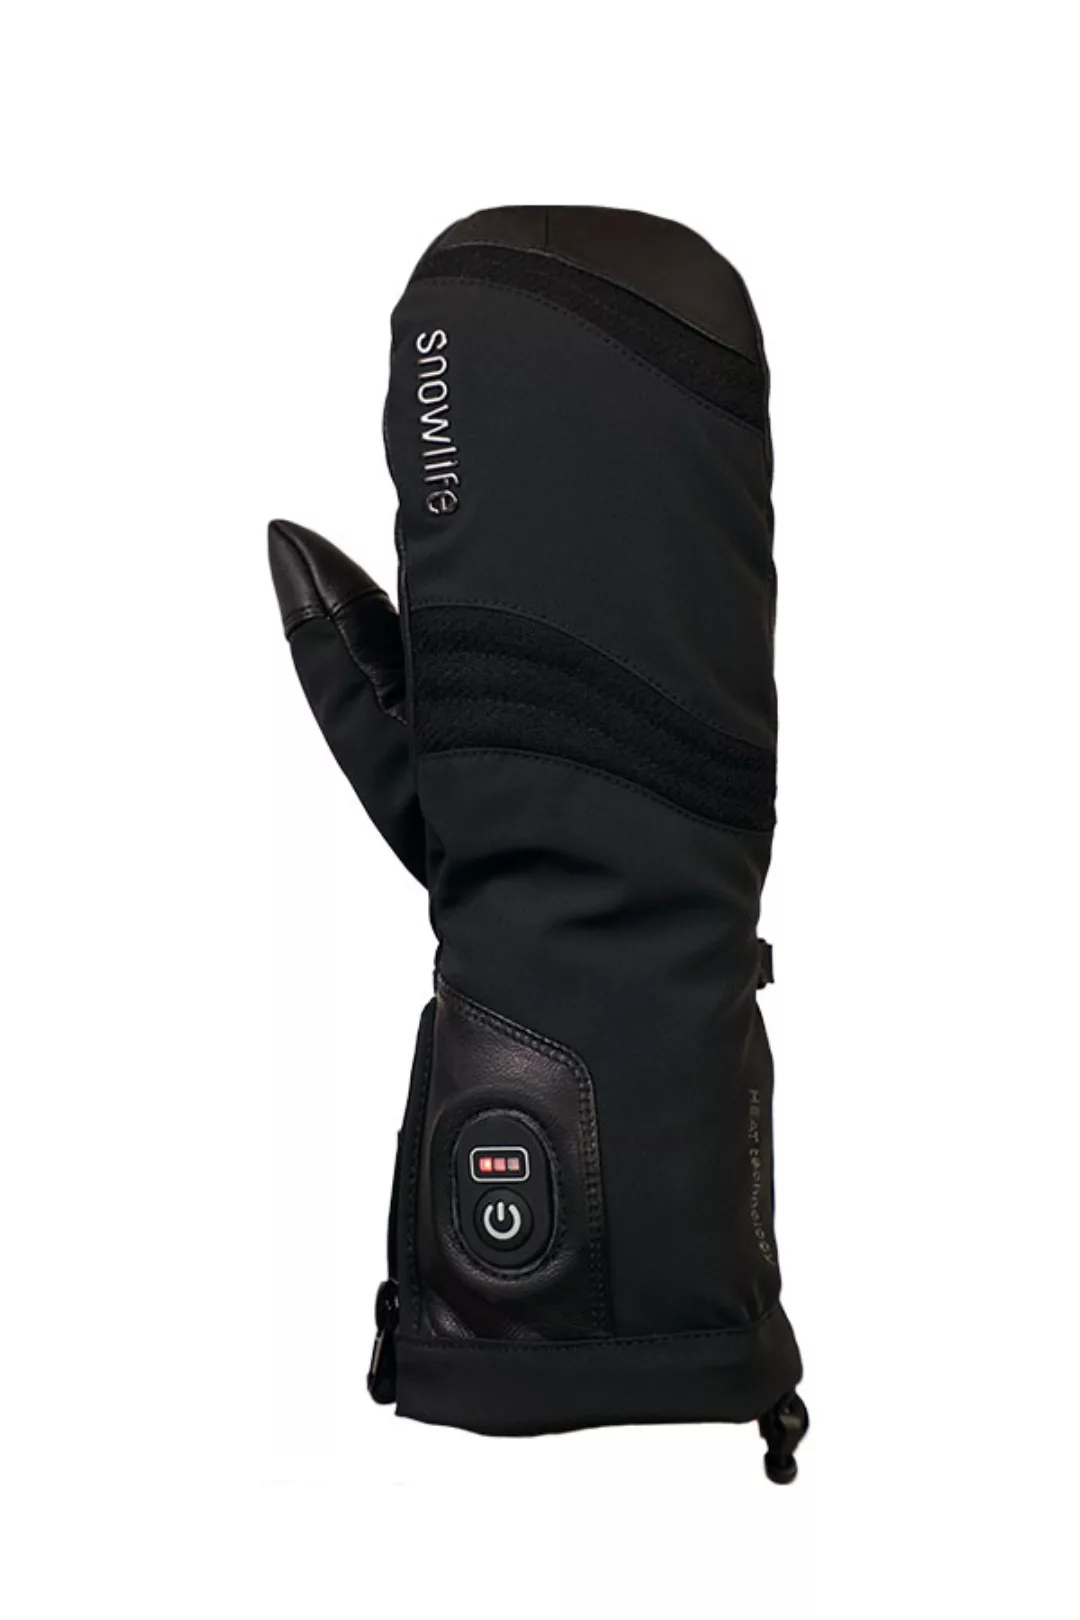 Snowlife Heat DT Mitten - beheizte Handschuhe günstig online kaufen